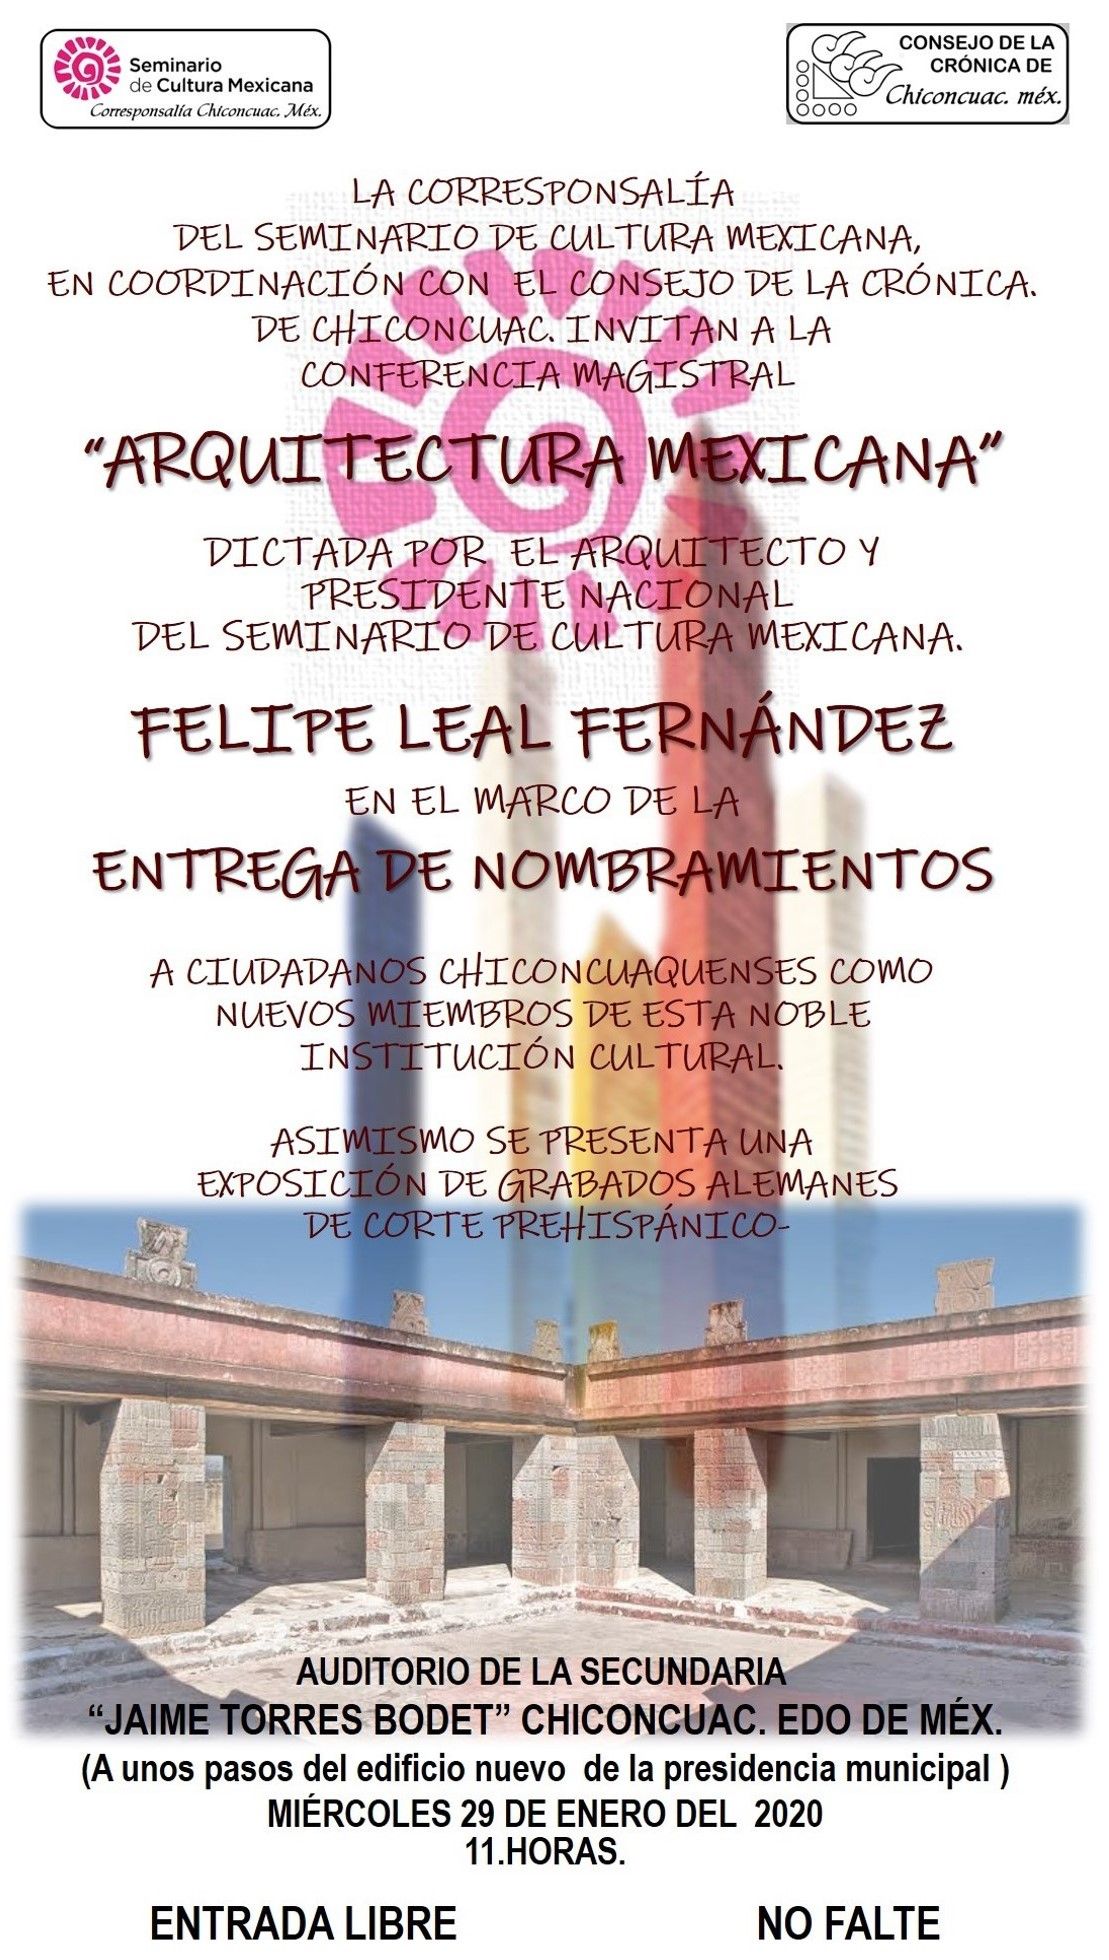 Presentarán conferencia magistral "Arquitectura Mexicana", en Chiconcuac